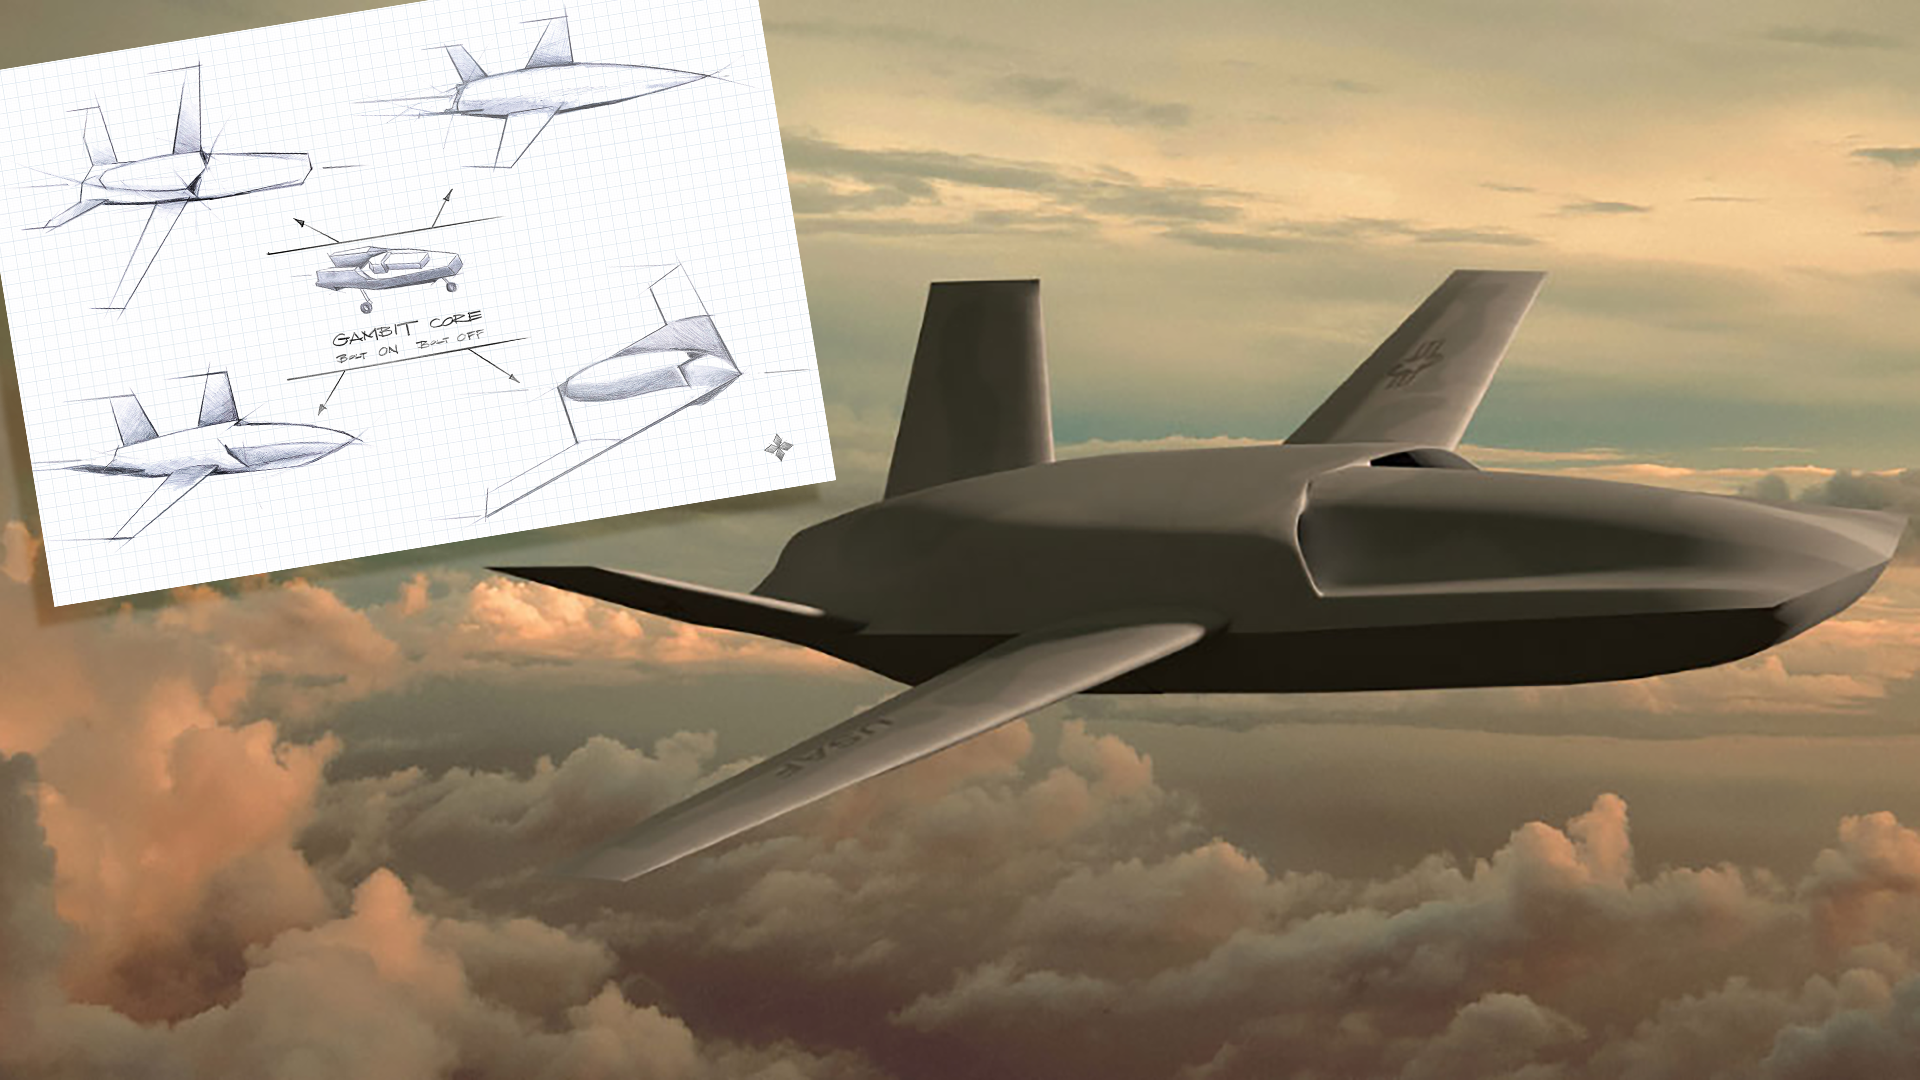 General Atomics Aeronautical Systems представила серию модульных БПЛА Gambit  она включает ударный, разведывательный, испытательный беспилотники и ст